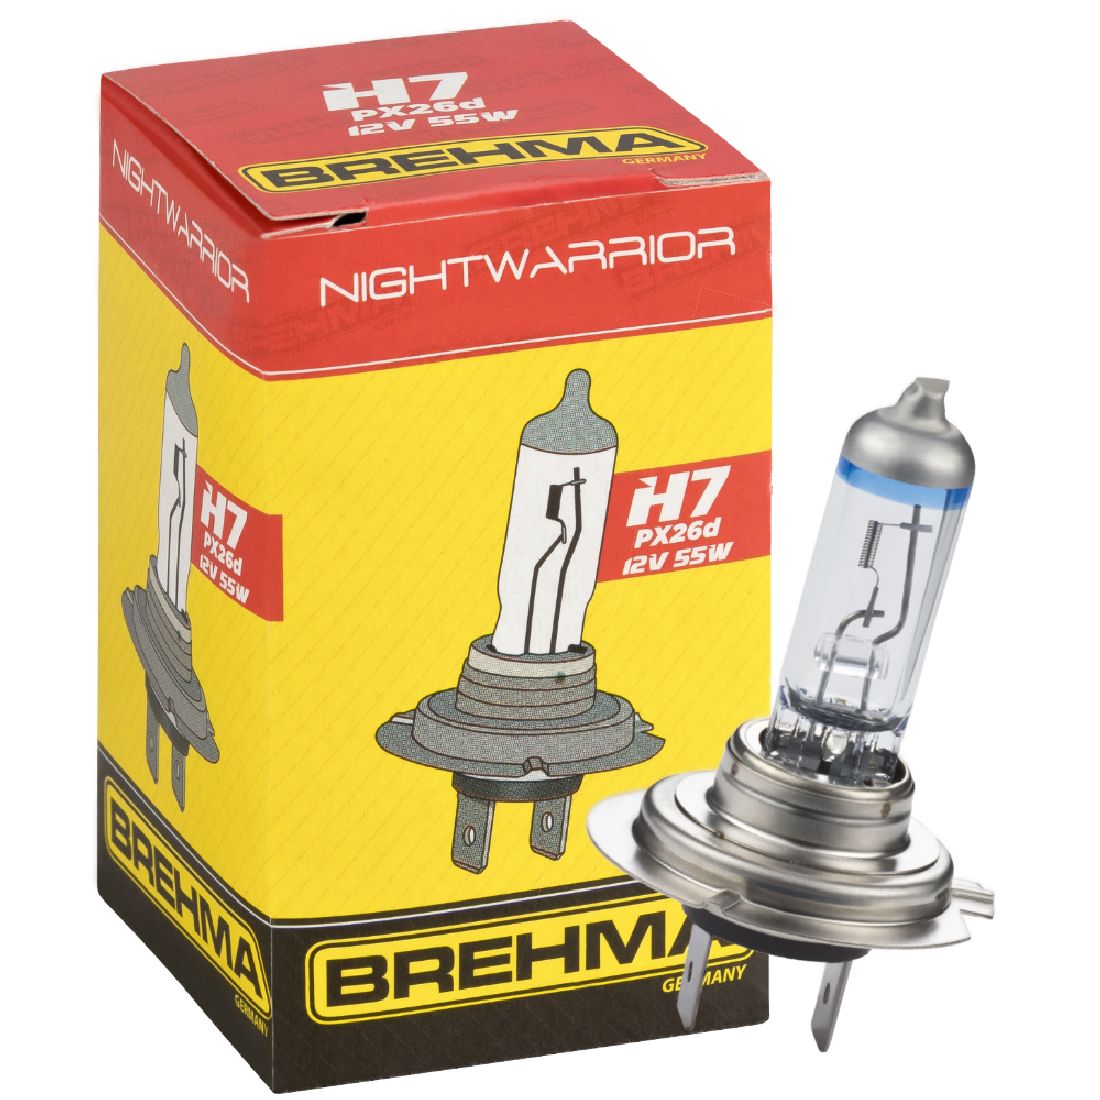 Auto-Lampen-Discount - H7 Lampen und mehr günstig kaufen - Duo Set BREHMA H7  12V 55W NightWarrior Lampe +120% mehr Licht